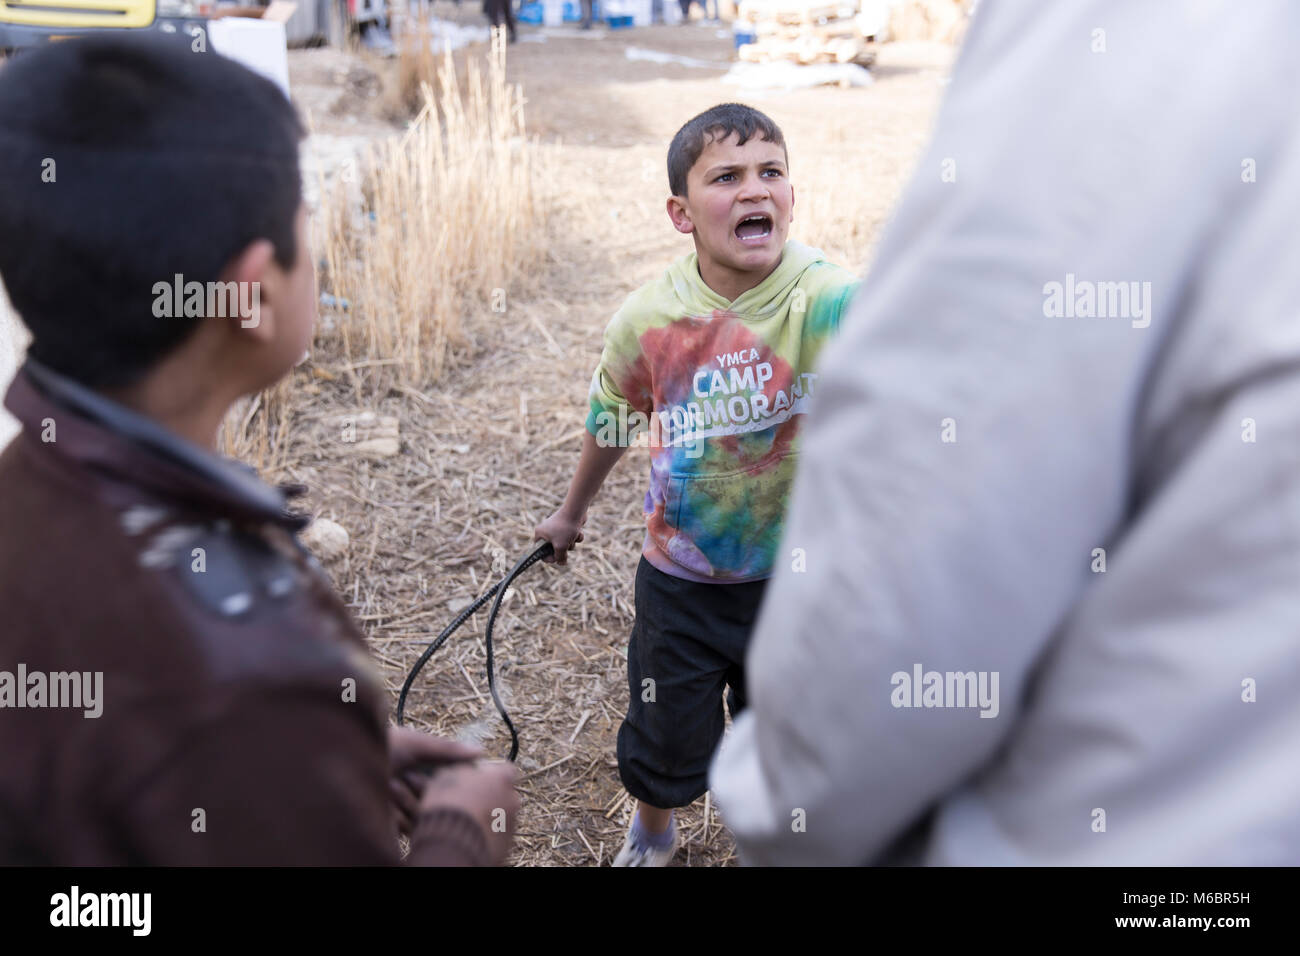 Mosul, Irak. 8. Dezember 2016 - ein Junge kämpft, versucht ein Mann mit einem Reifen Schlauch zu versuchen Beihilfen während einer United Distribution Nationen zu stehlen, Peitsche Stockfoto